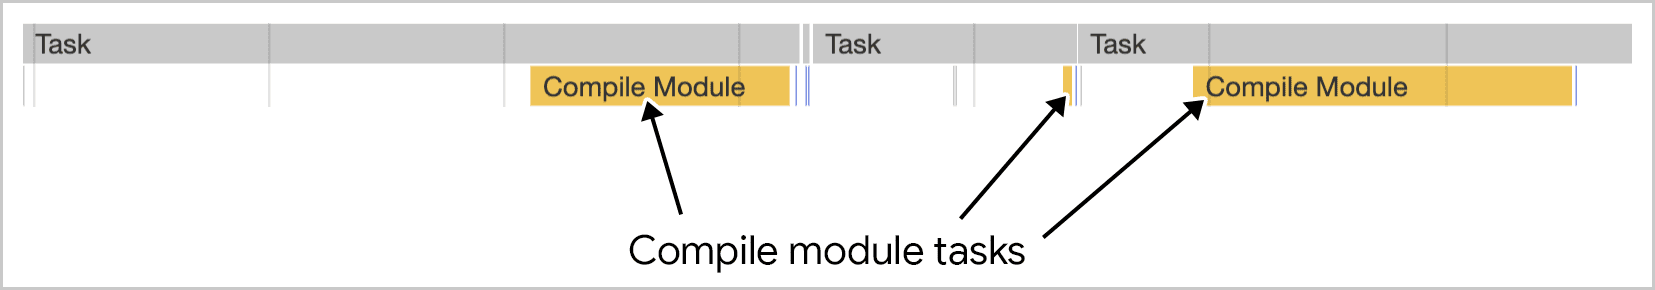 मॉड्यूल कंपाइलेशन, Chrome DevTools में दिखाए गए कई टास्क में काम करता है.